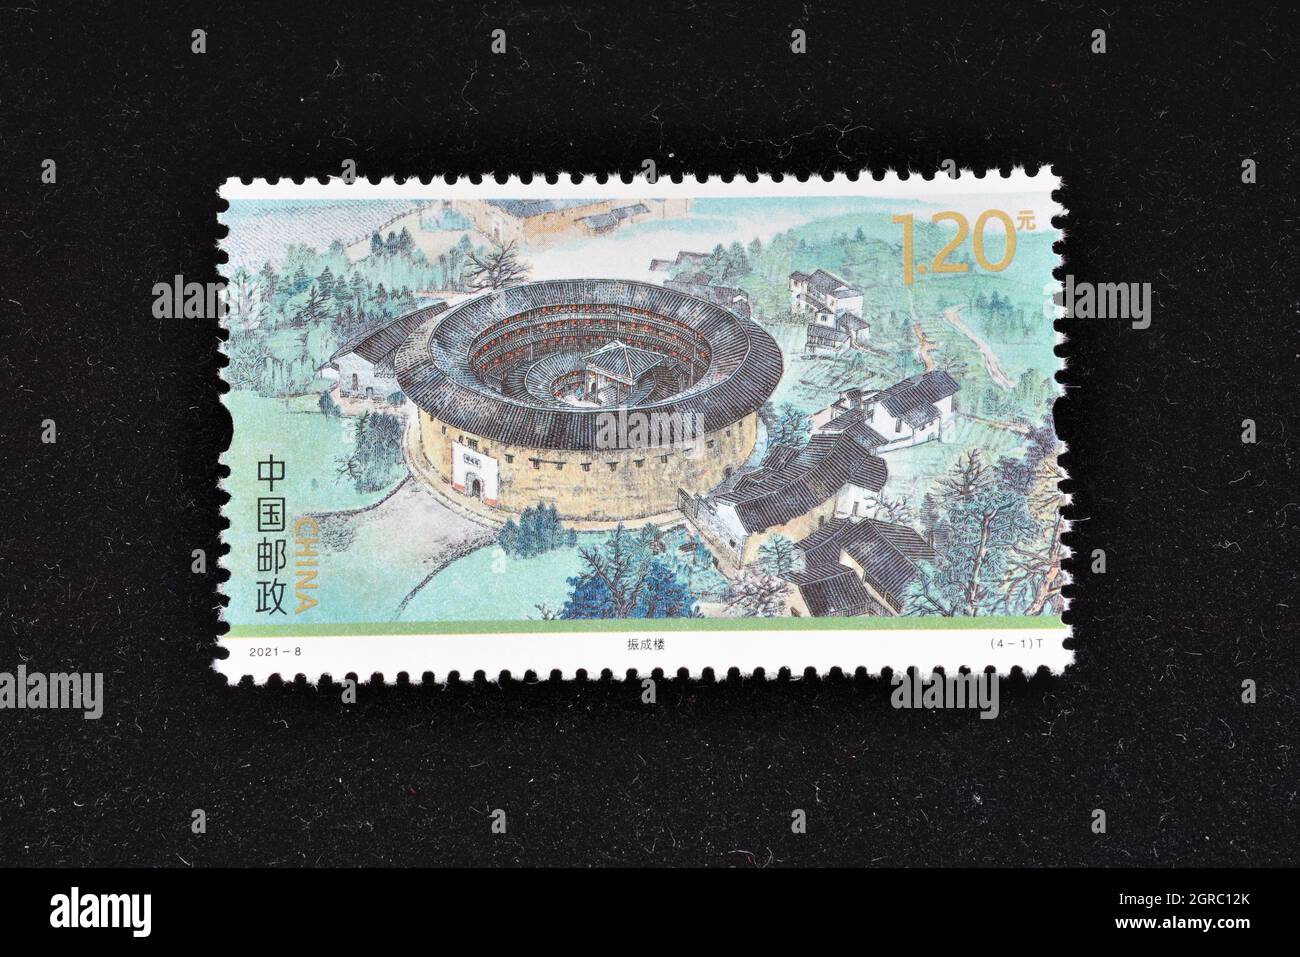 CHINA - CIRCA 2021: A stamps printed in China shows 2021-8 Fujian Tulou - Zhengcheng Building,  circa 2021. Stock Photo